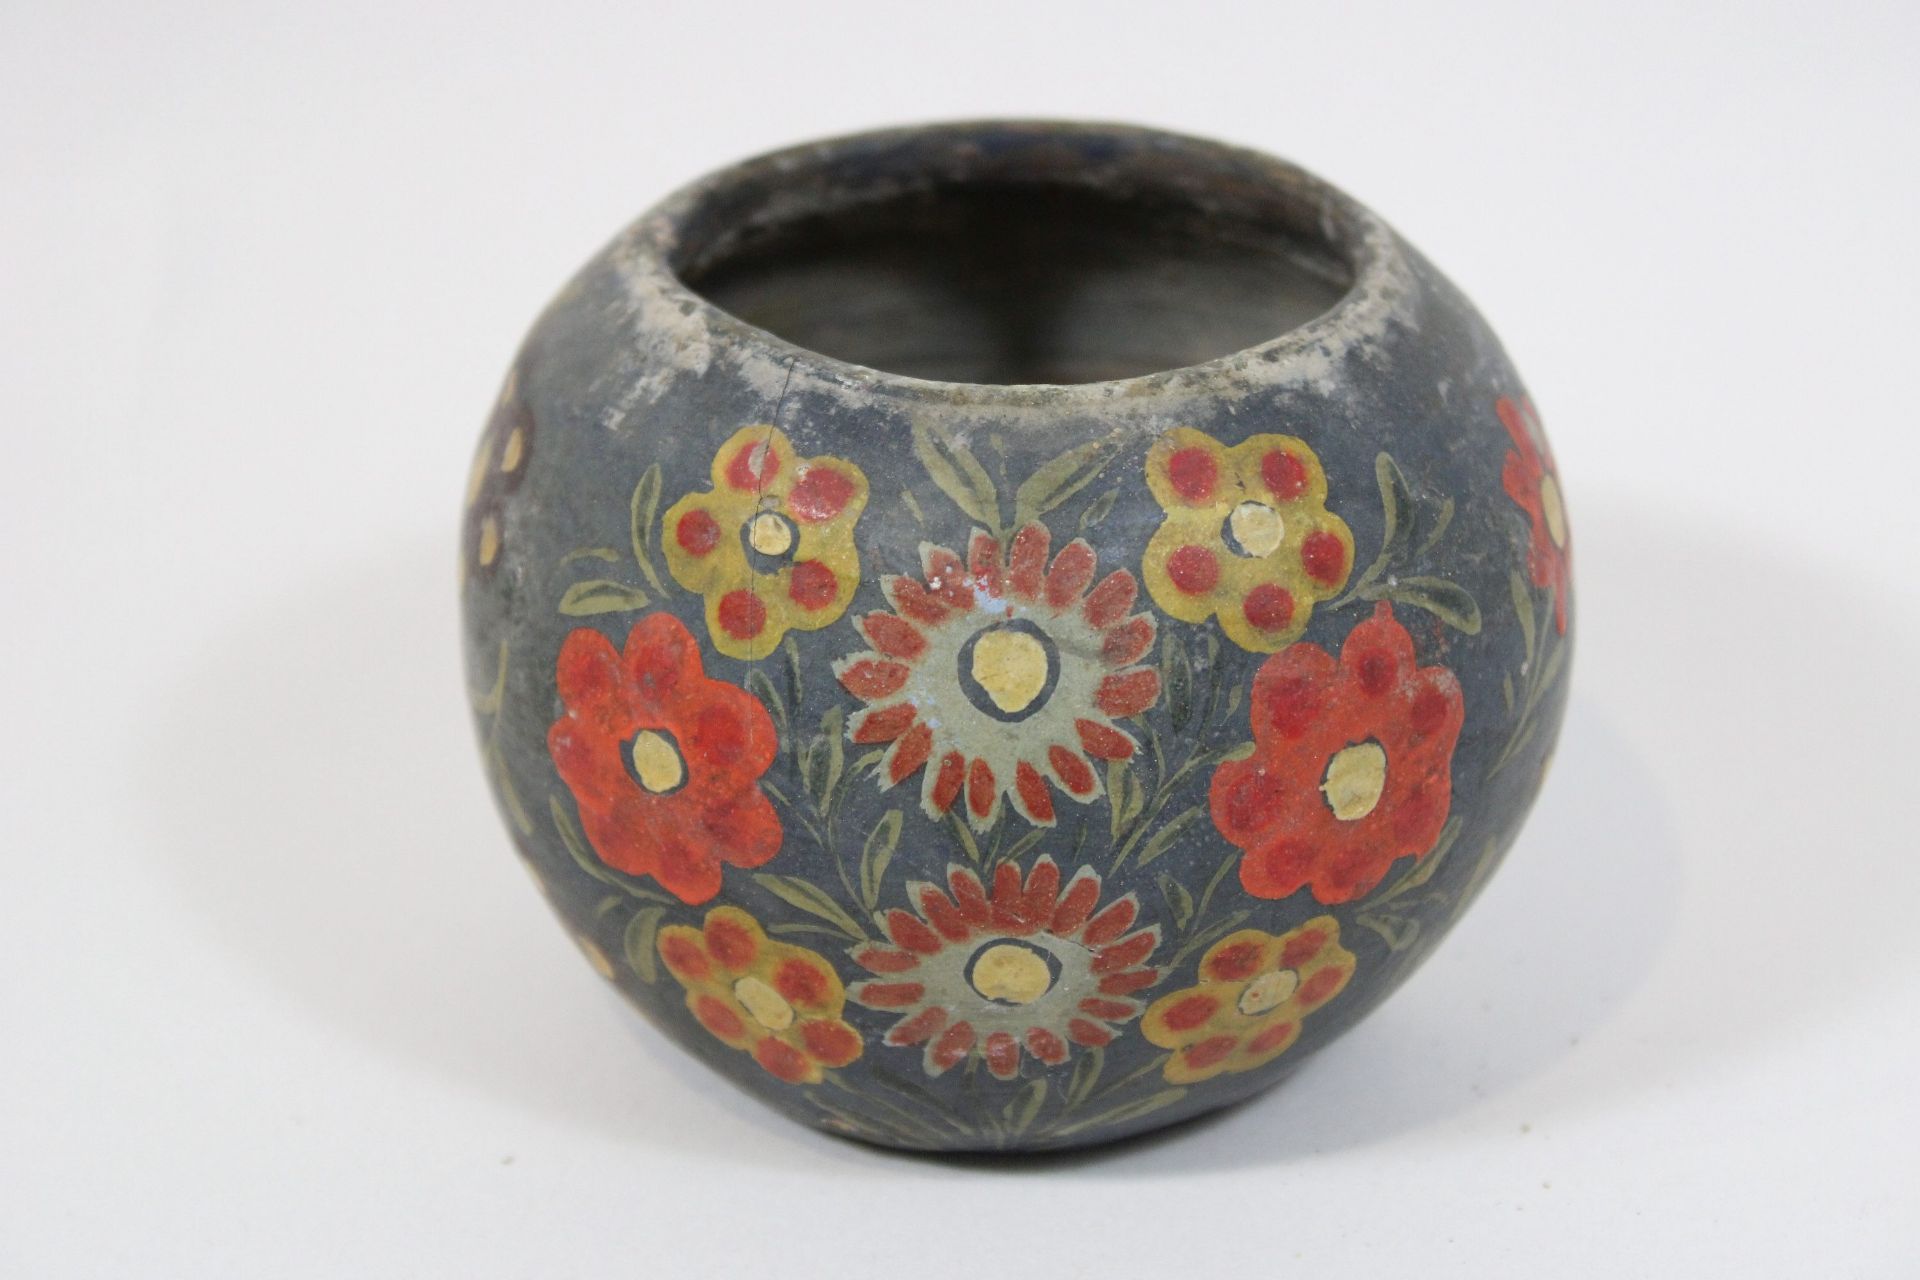 Bauchige Vase, persisch, 12.-14. Jh.